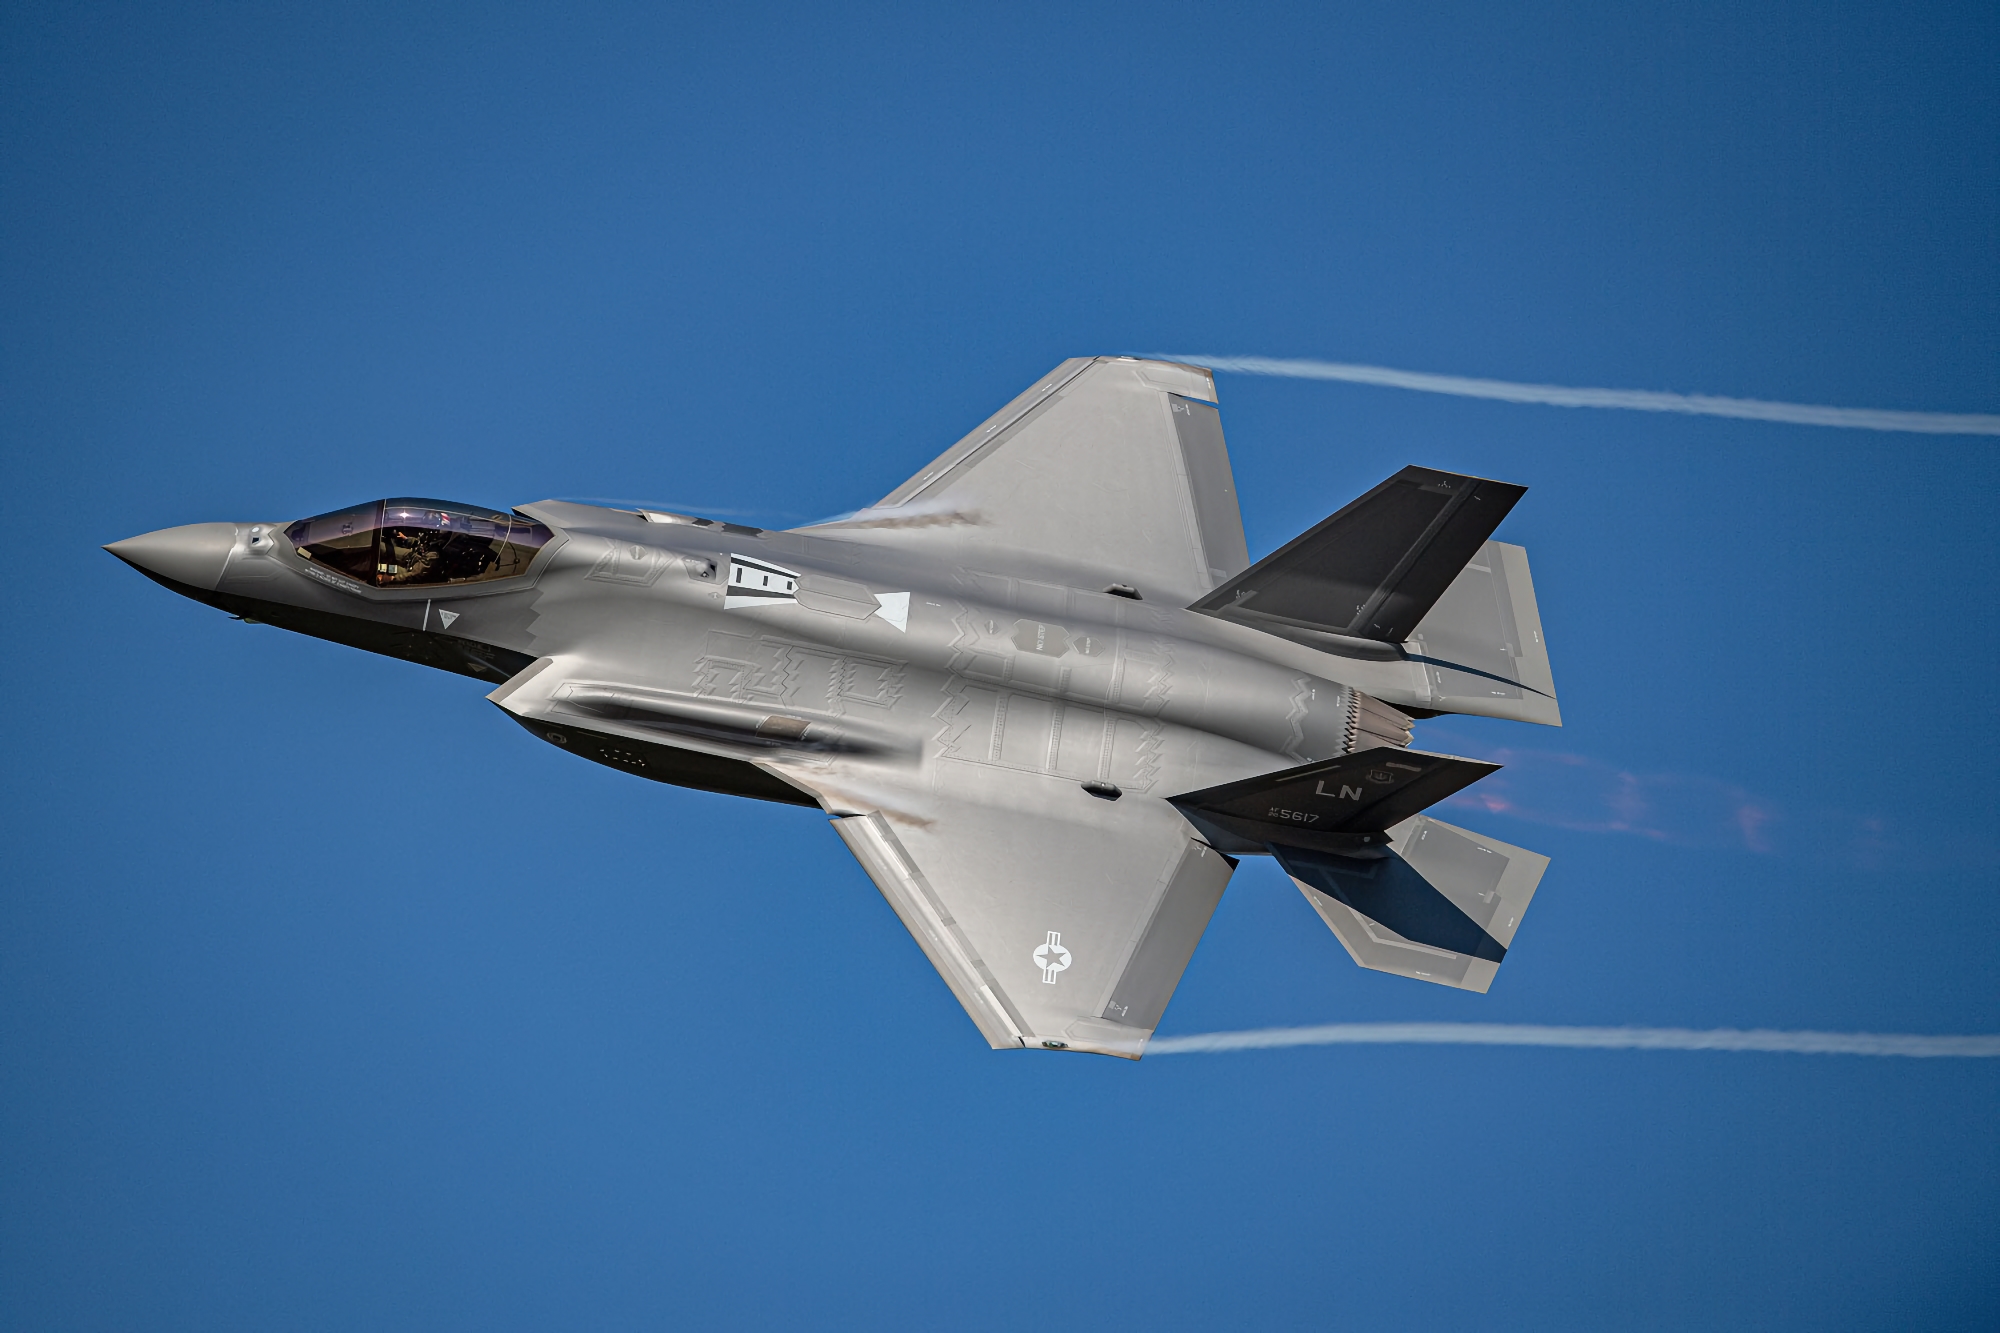 Kontrakt värt 5,62 miljarder USD: Tjeckien tecknar kontrakt om att köpa 24 femte generationens stridsflygplan av typen F-35A